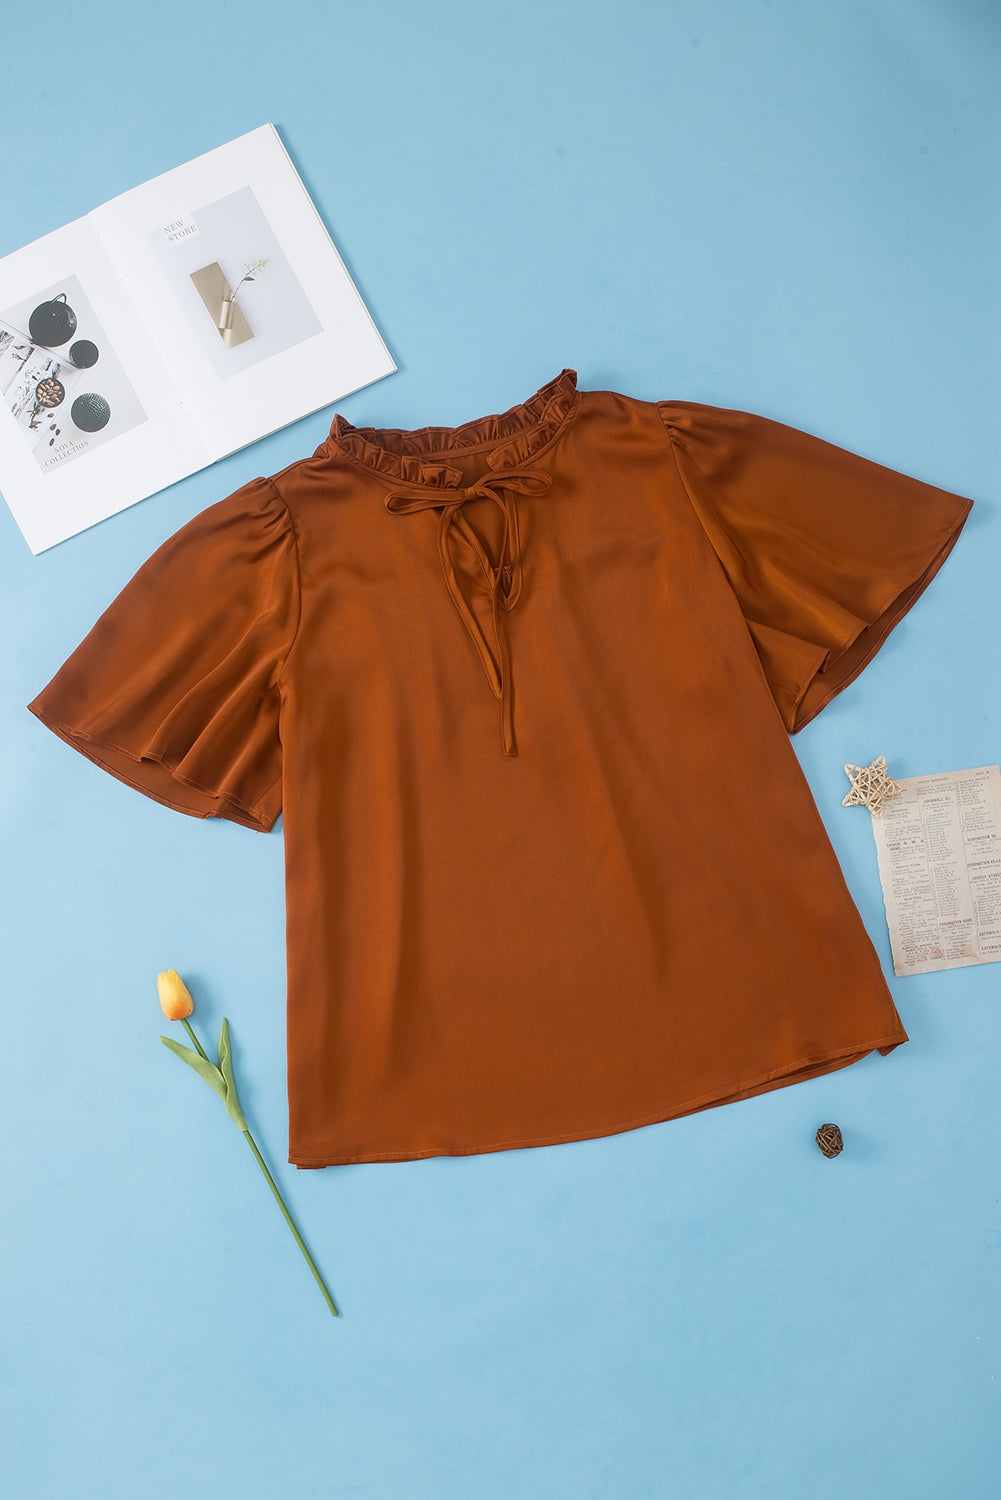 Satenska bluza veće veličine s naborima u boji kestena